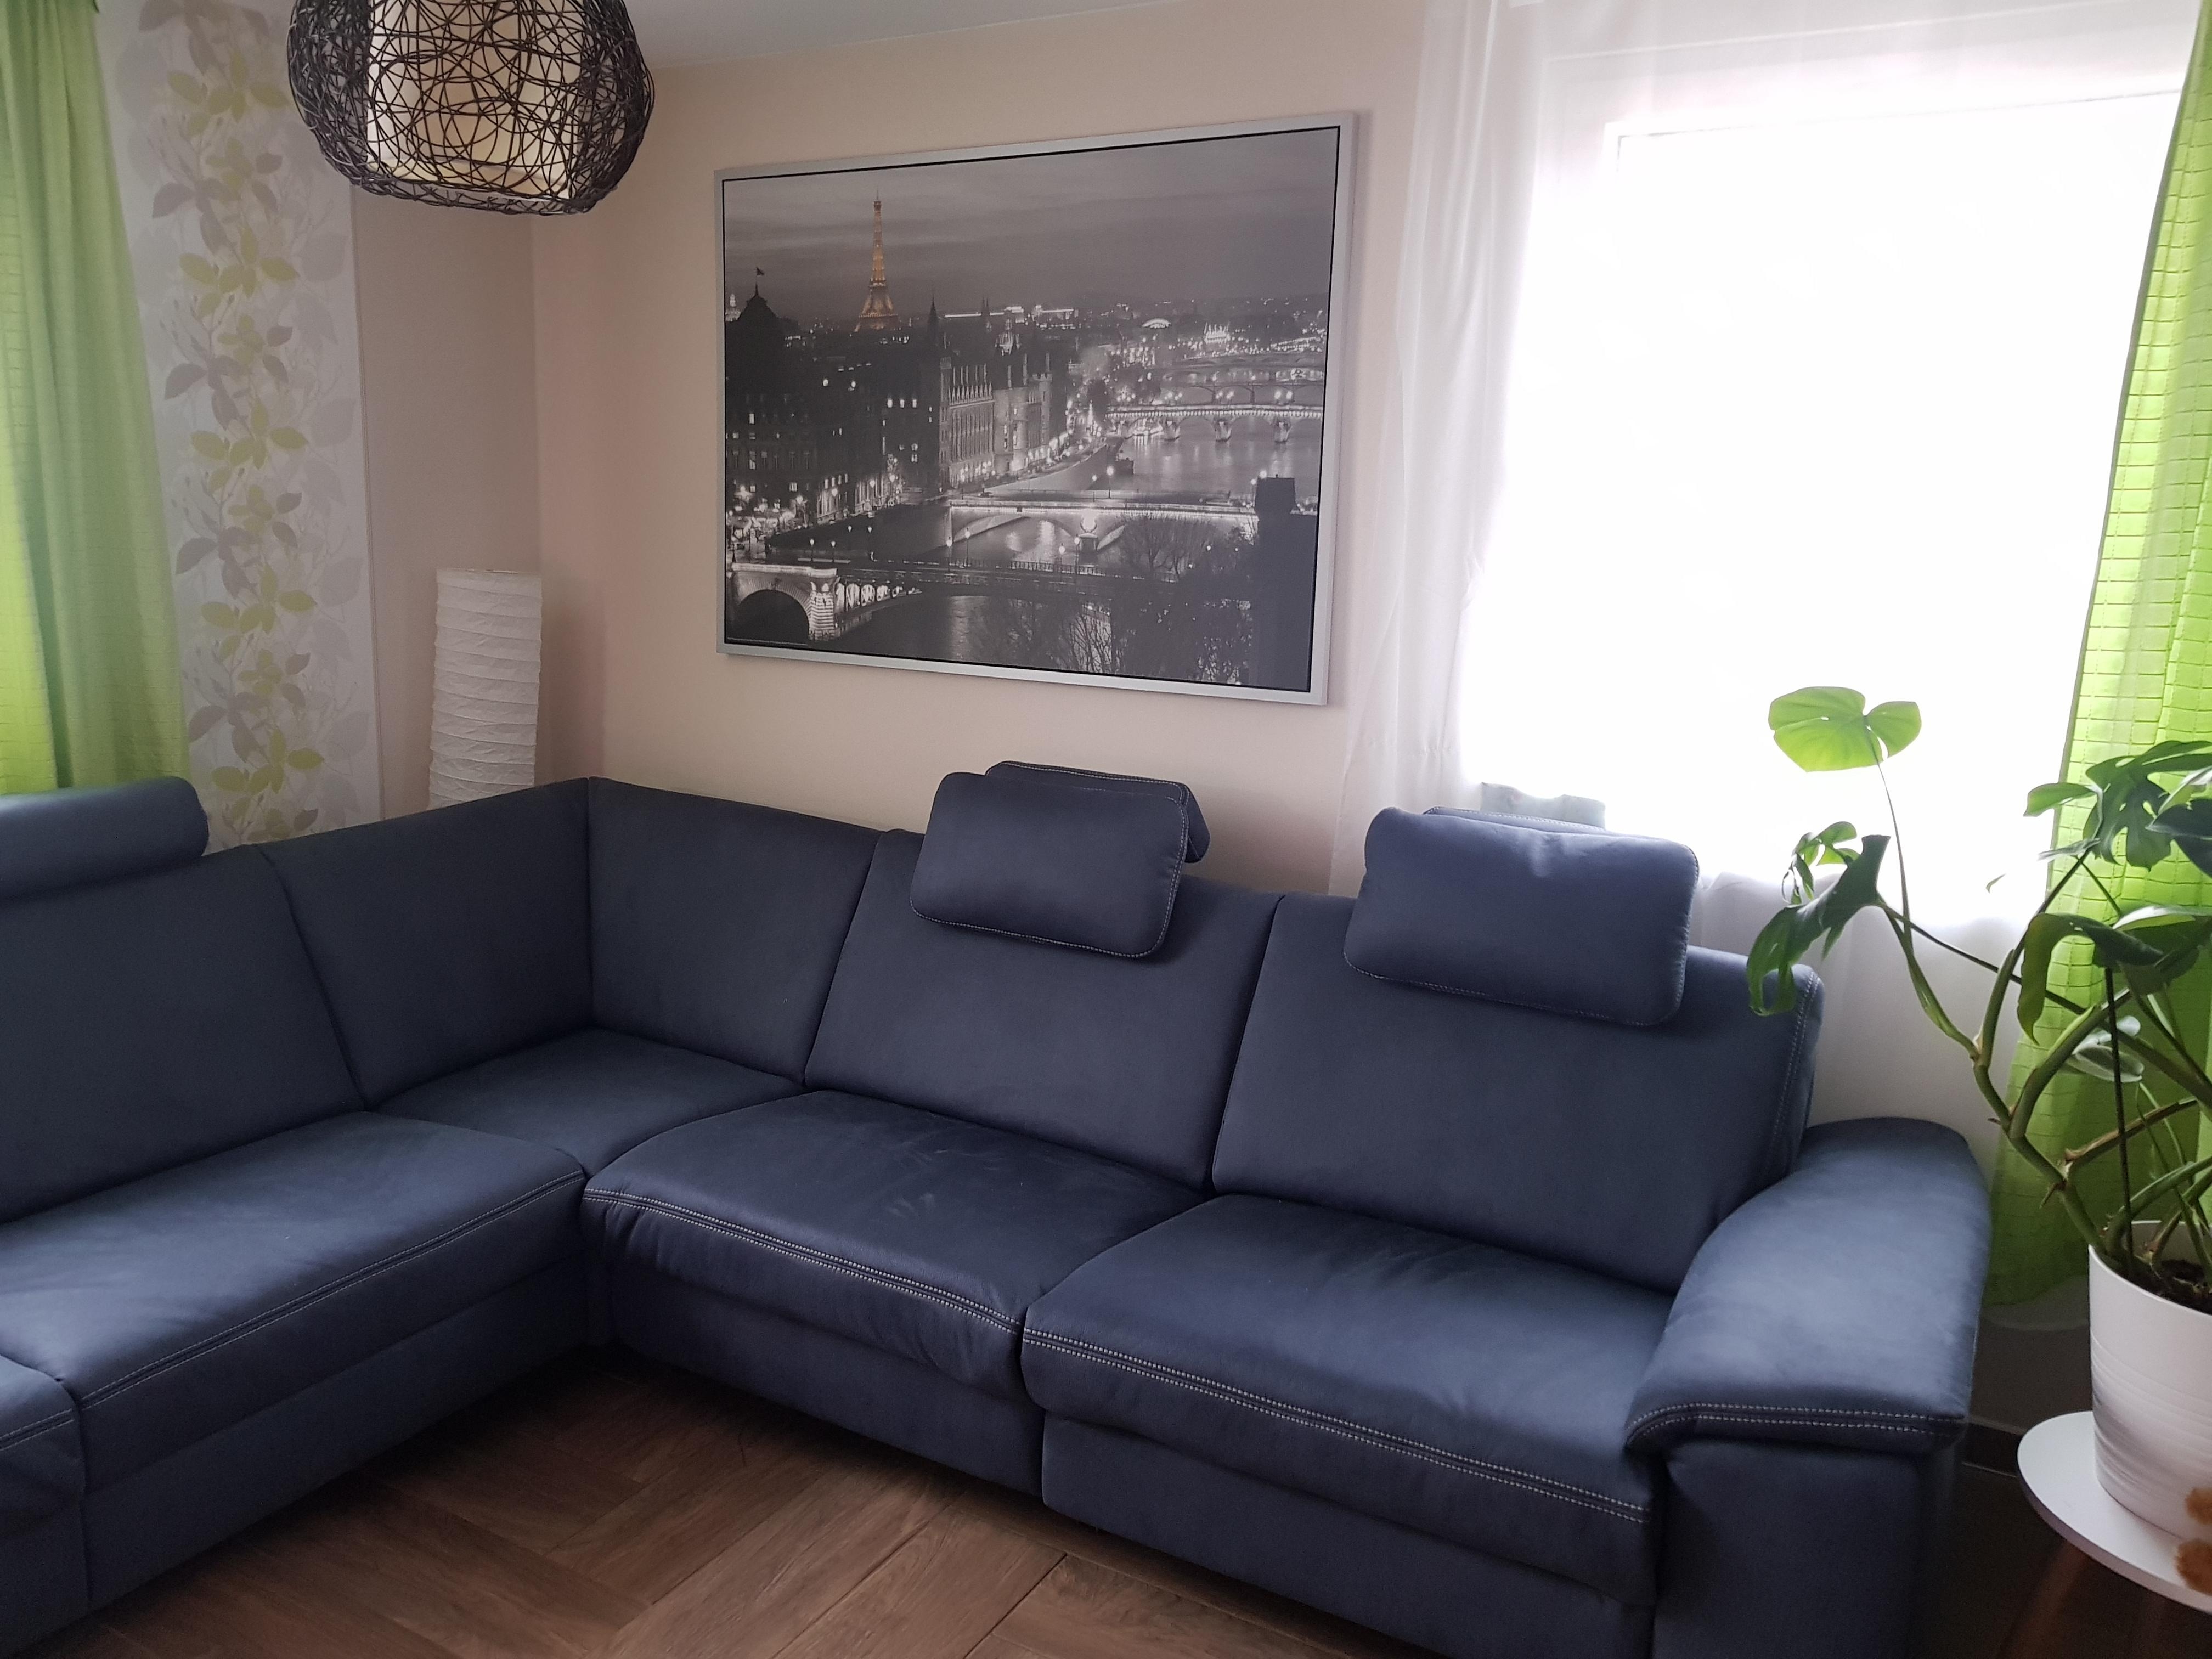 Unser neuer Mitbewohner #sofa #couchliebt #couch #kuschelzeit #auszeit